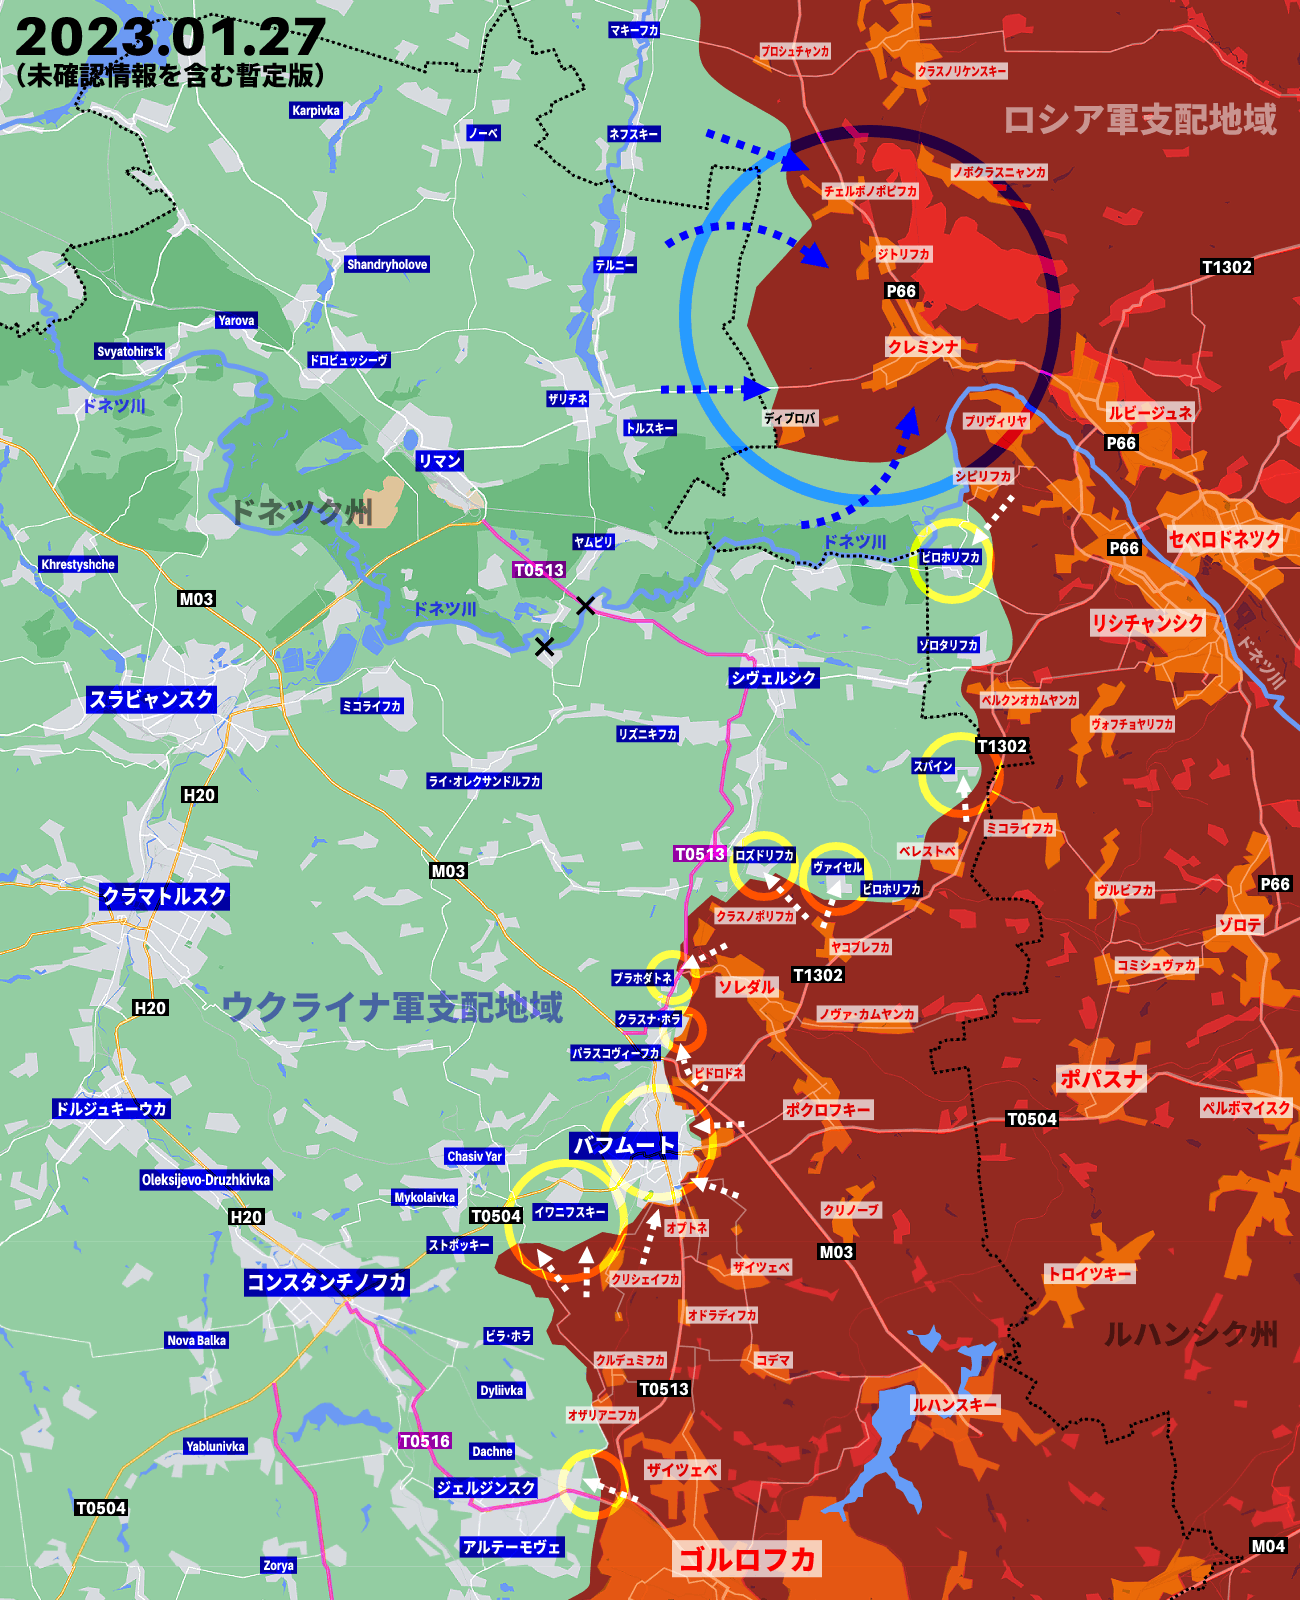 ウクライナ侵攻338日目の戦況、ロシア軍がバフムート以外でも前進を試みる